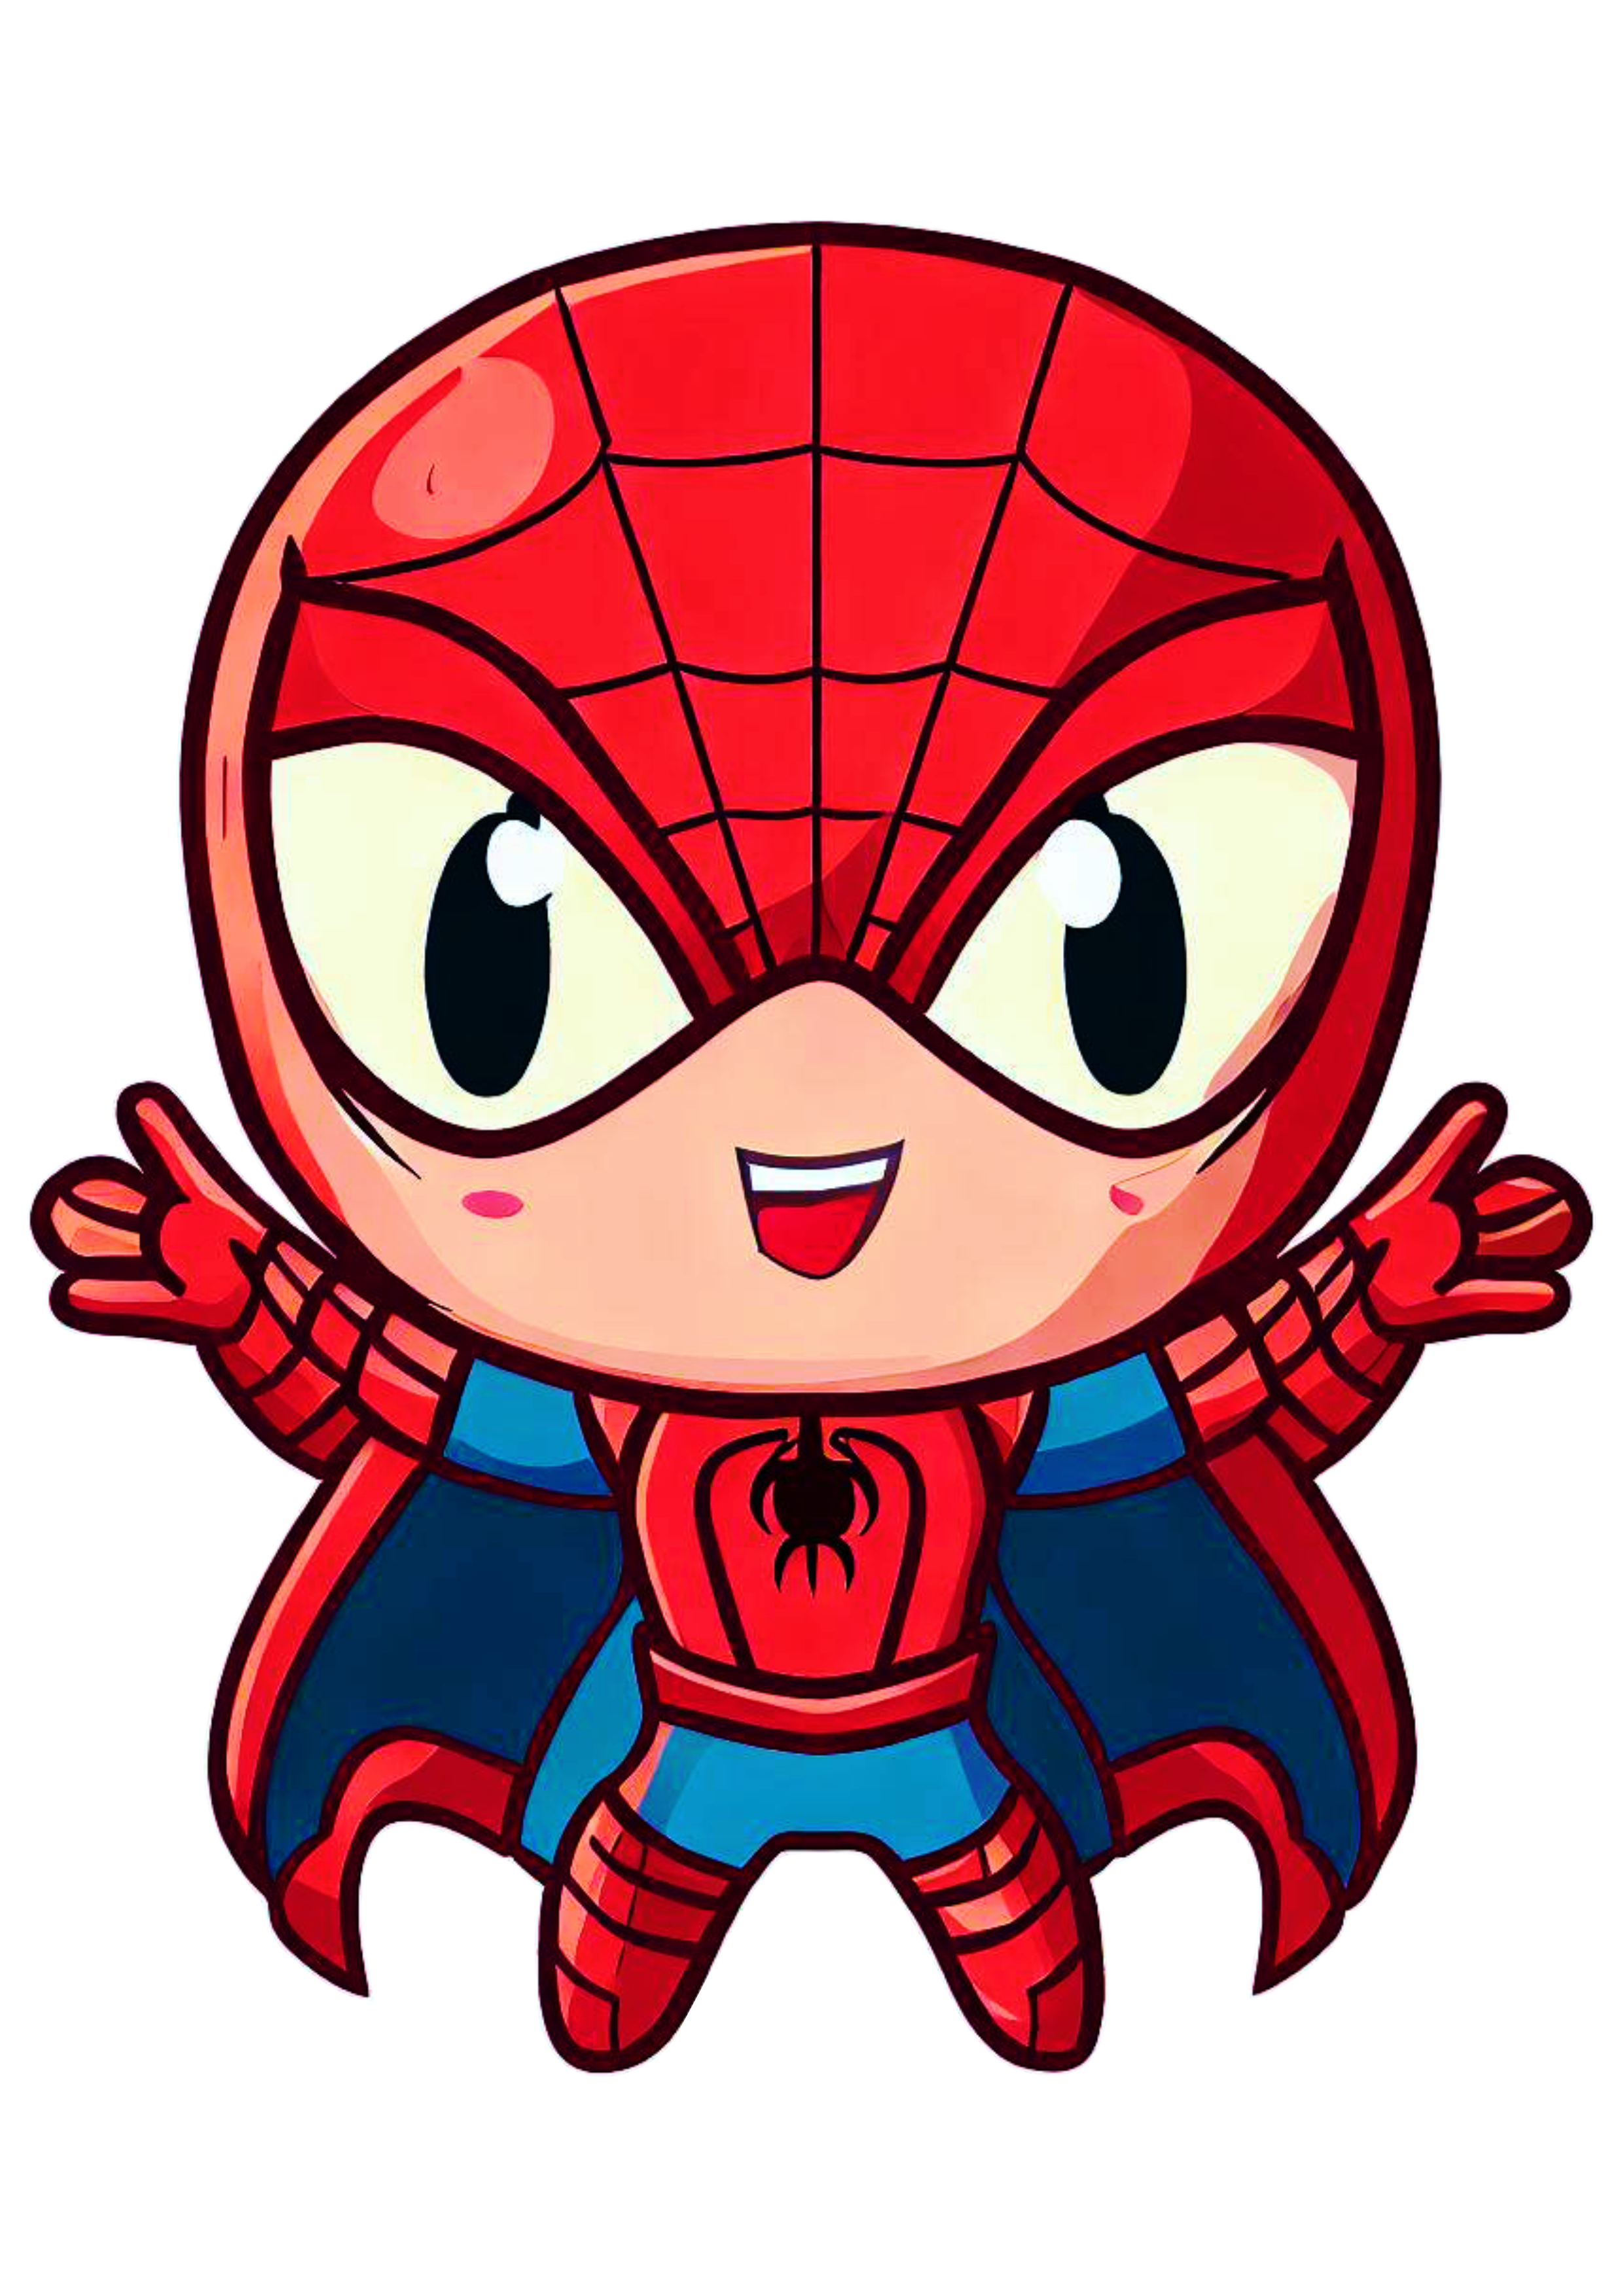 Homem aranha de capa cute spider man baby desenho infantil cartoon fantasia imagem design sem fundo png